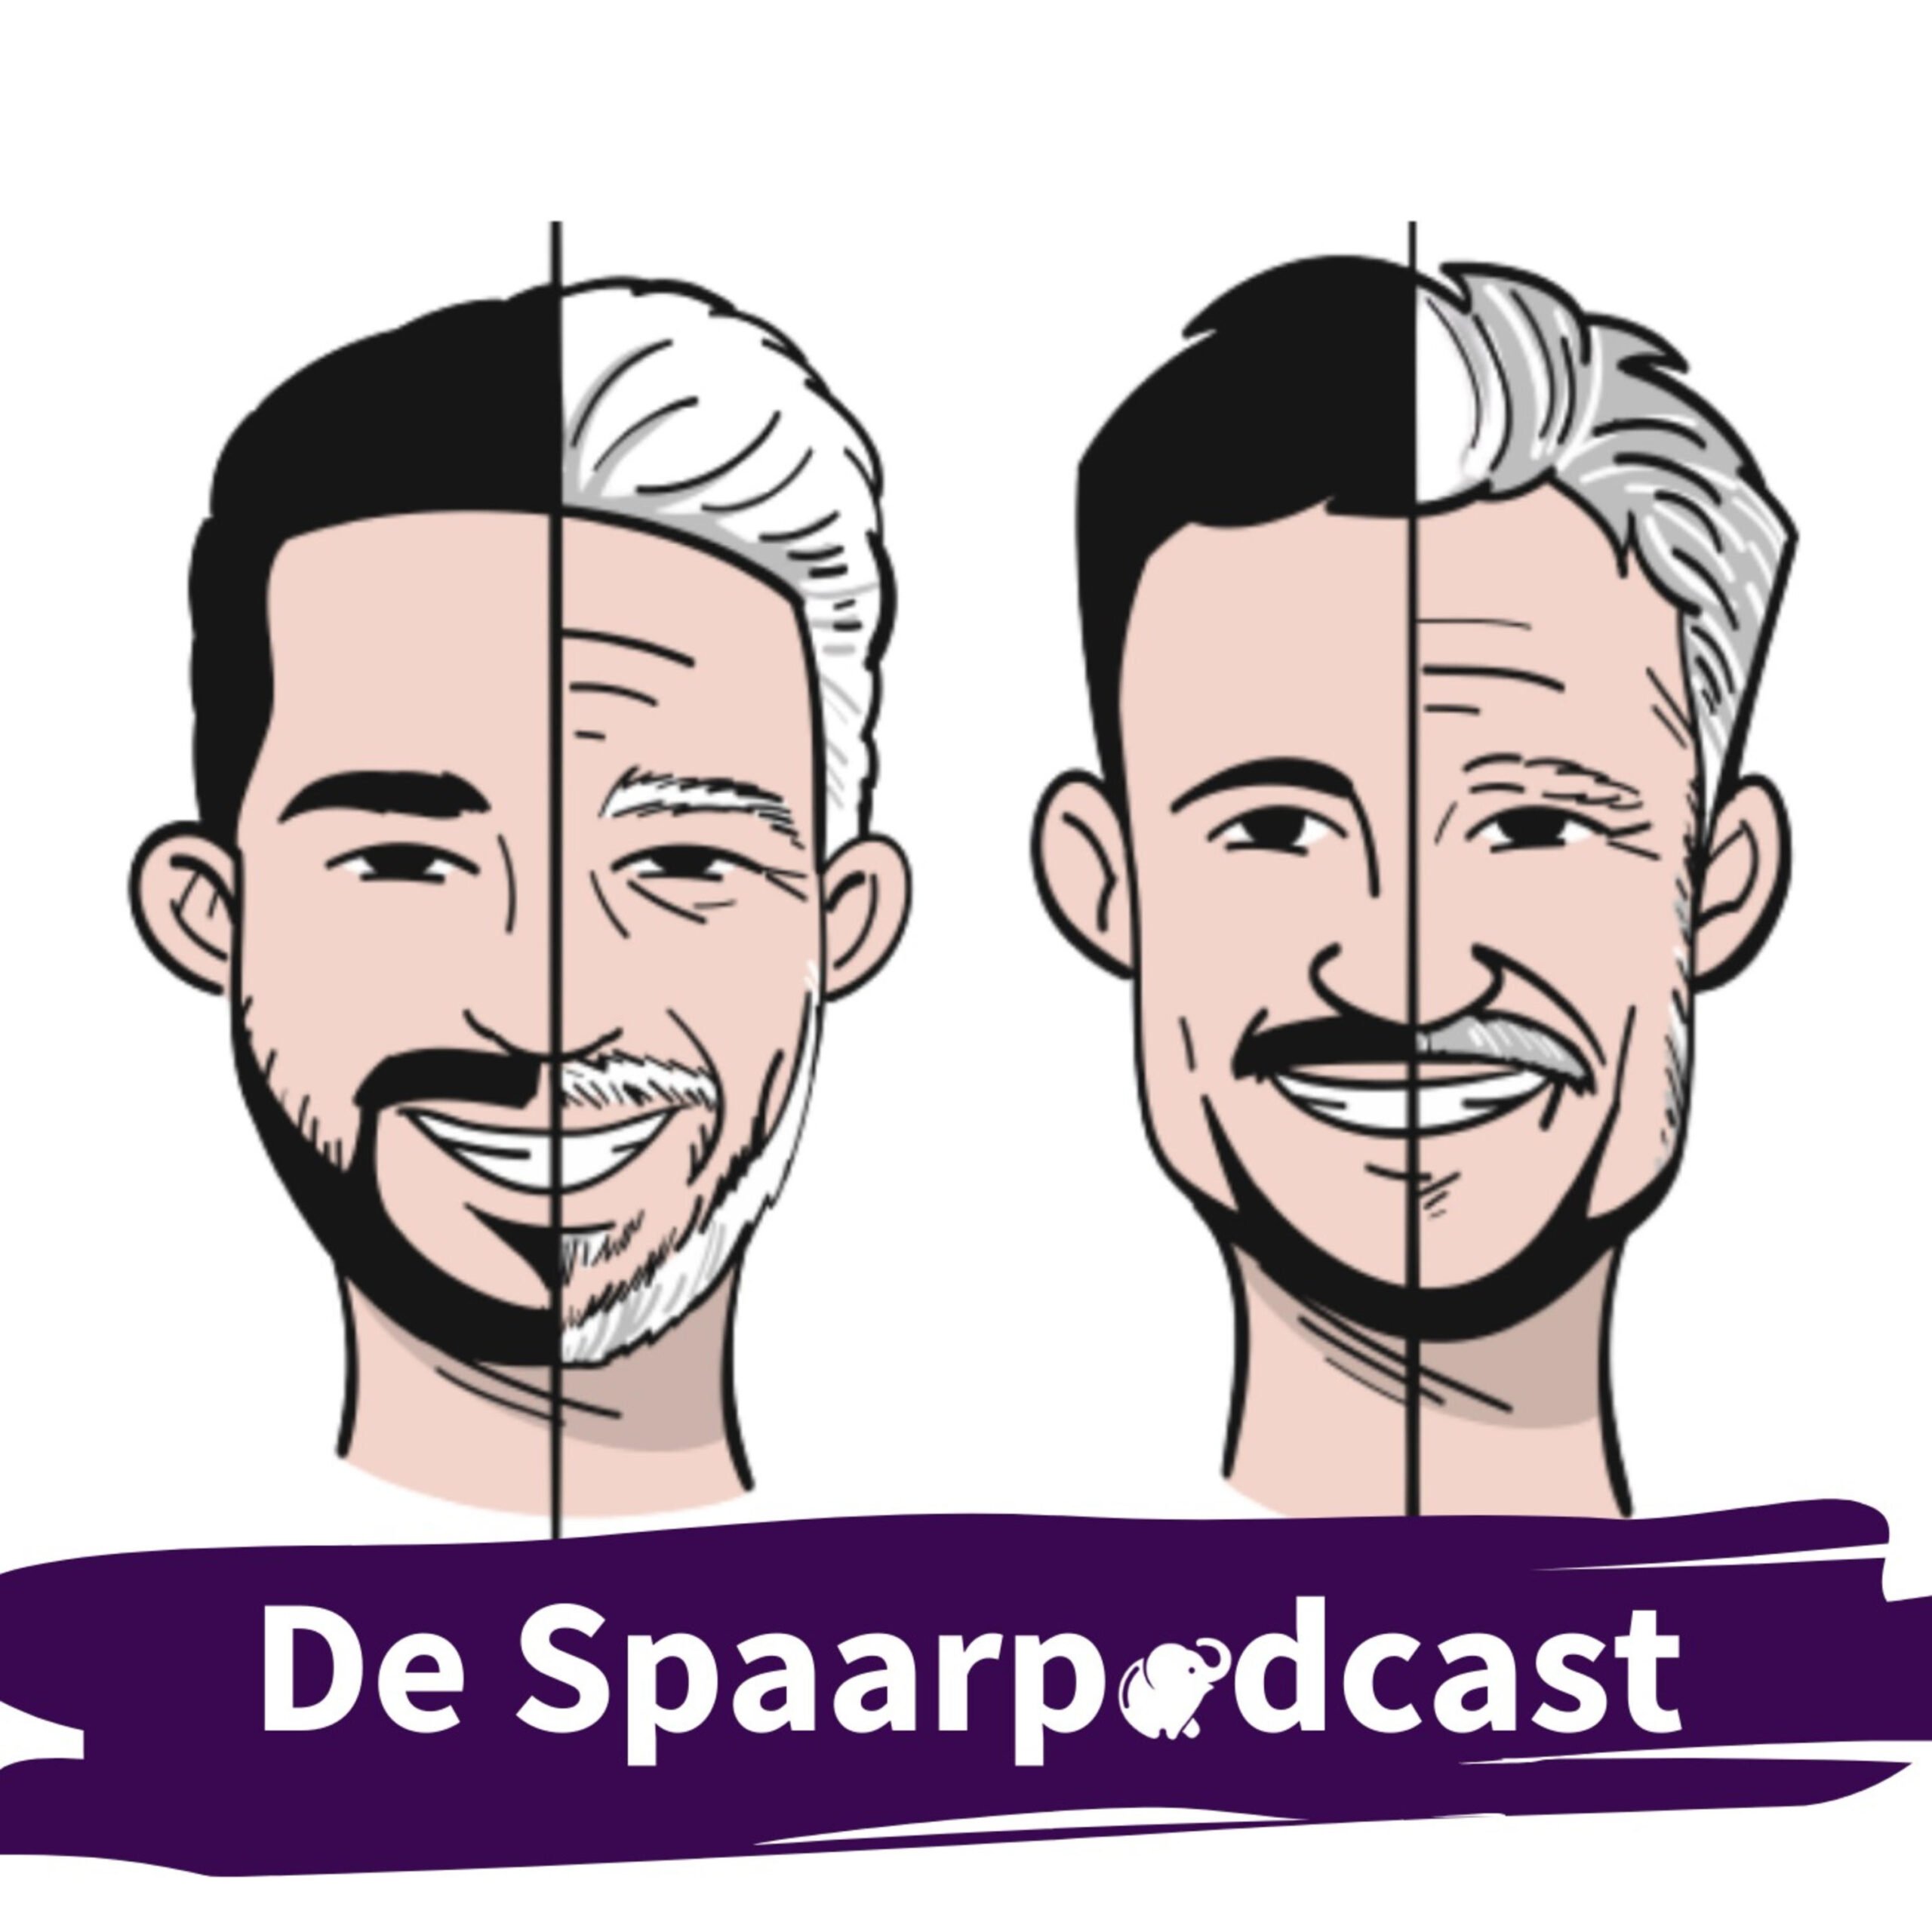 De Spaarpodcast